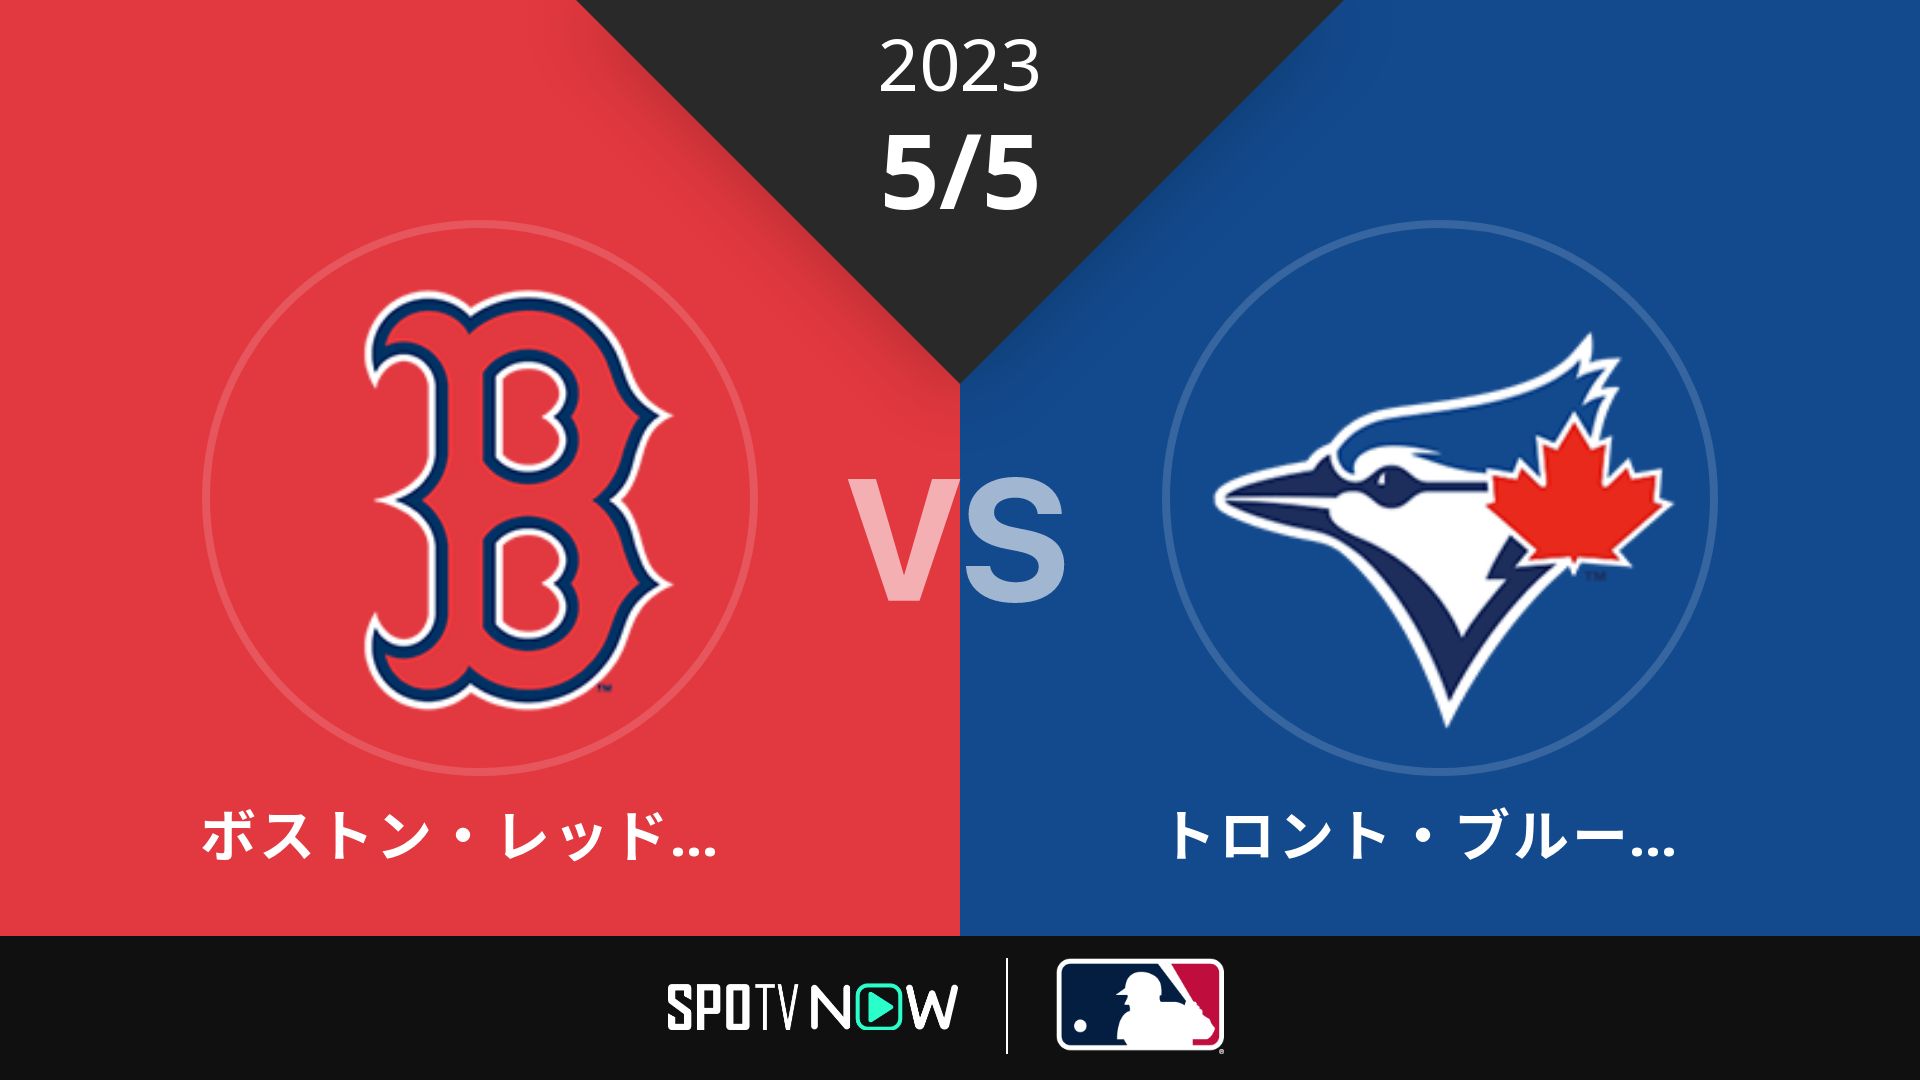 2023/5/5 Rソックス vs ブルージェイズ [MLB]